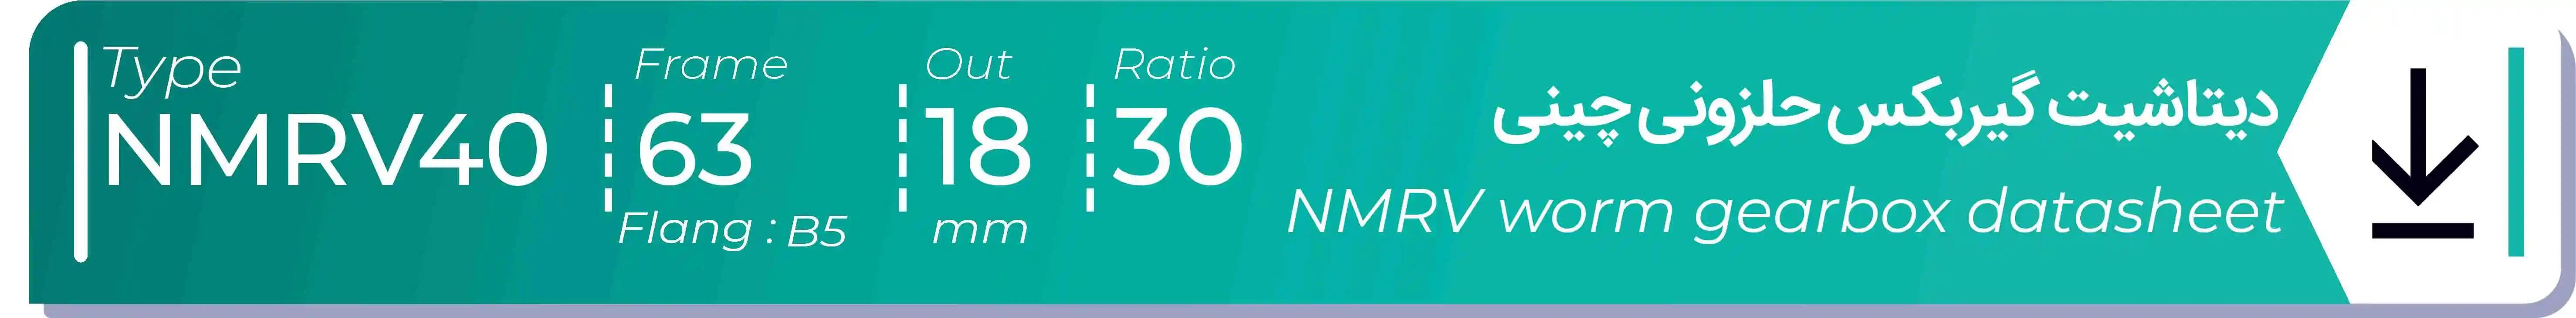  دیتاشیت و مشخصات فنی گیربکس حلزونی چینی   NMRV40  -  با خروجی 18- میلی متر و نسبت30 و فریم 63